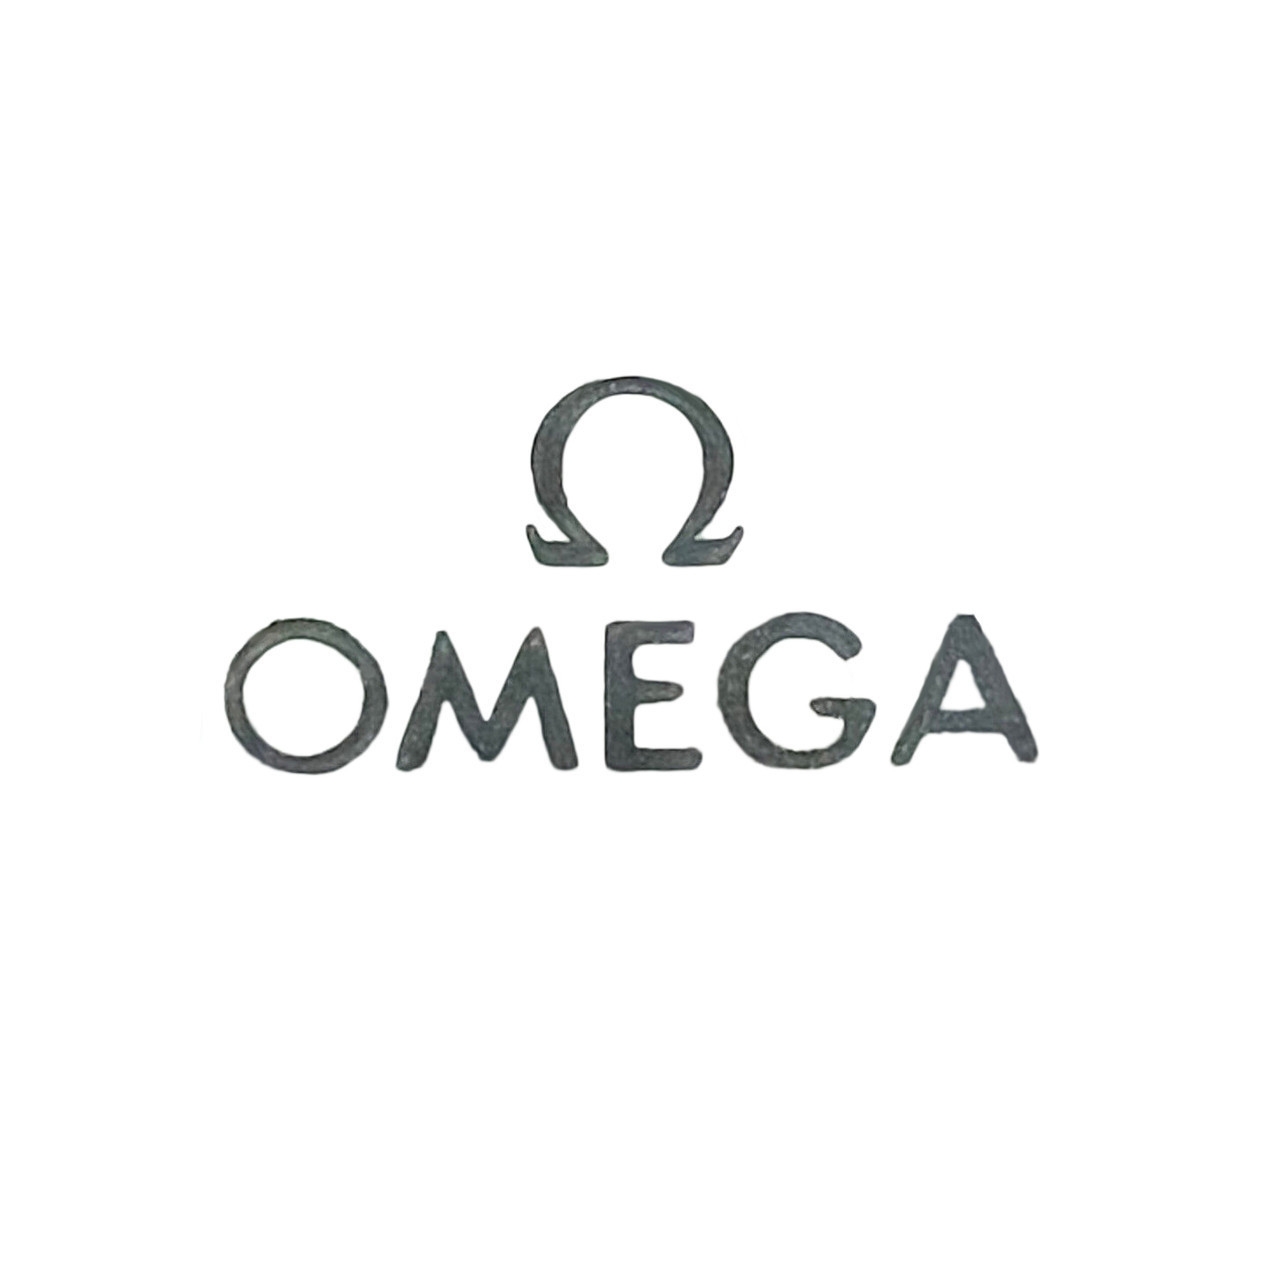 Omega 540 Center Pinion With Canon Pinion